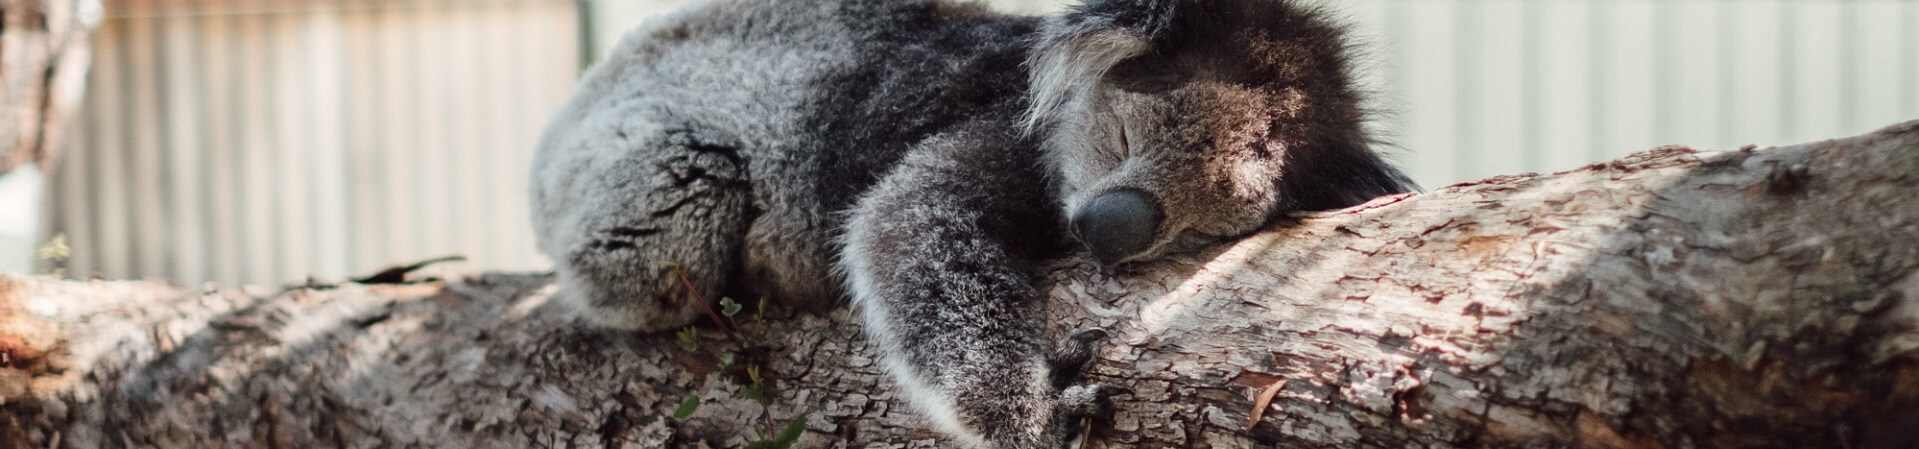 Are there wild koalas on Phillip Island?